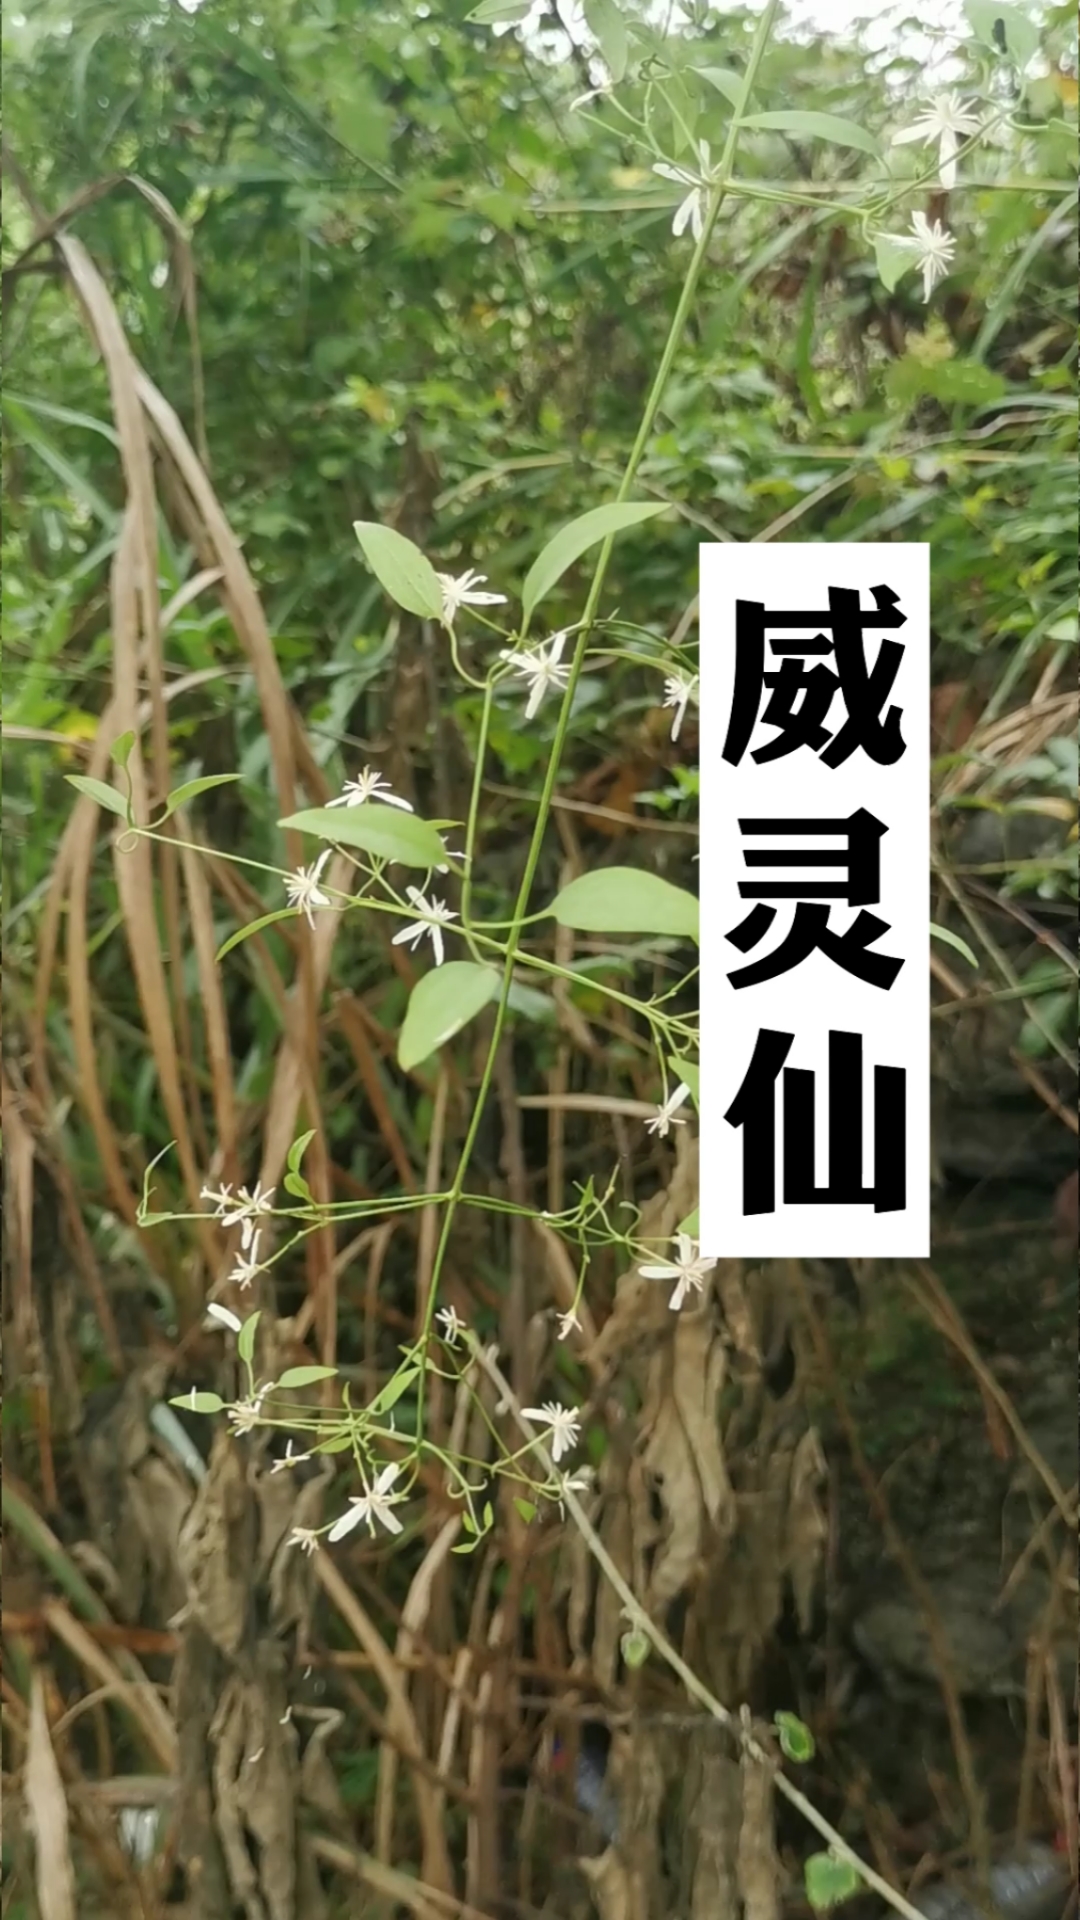 威灵仙-药用植物花谱-图片